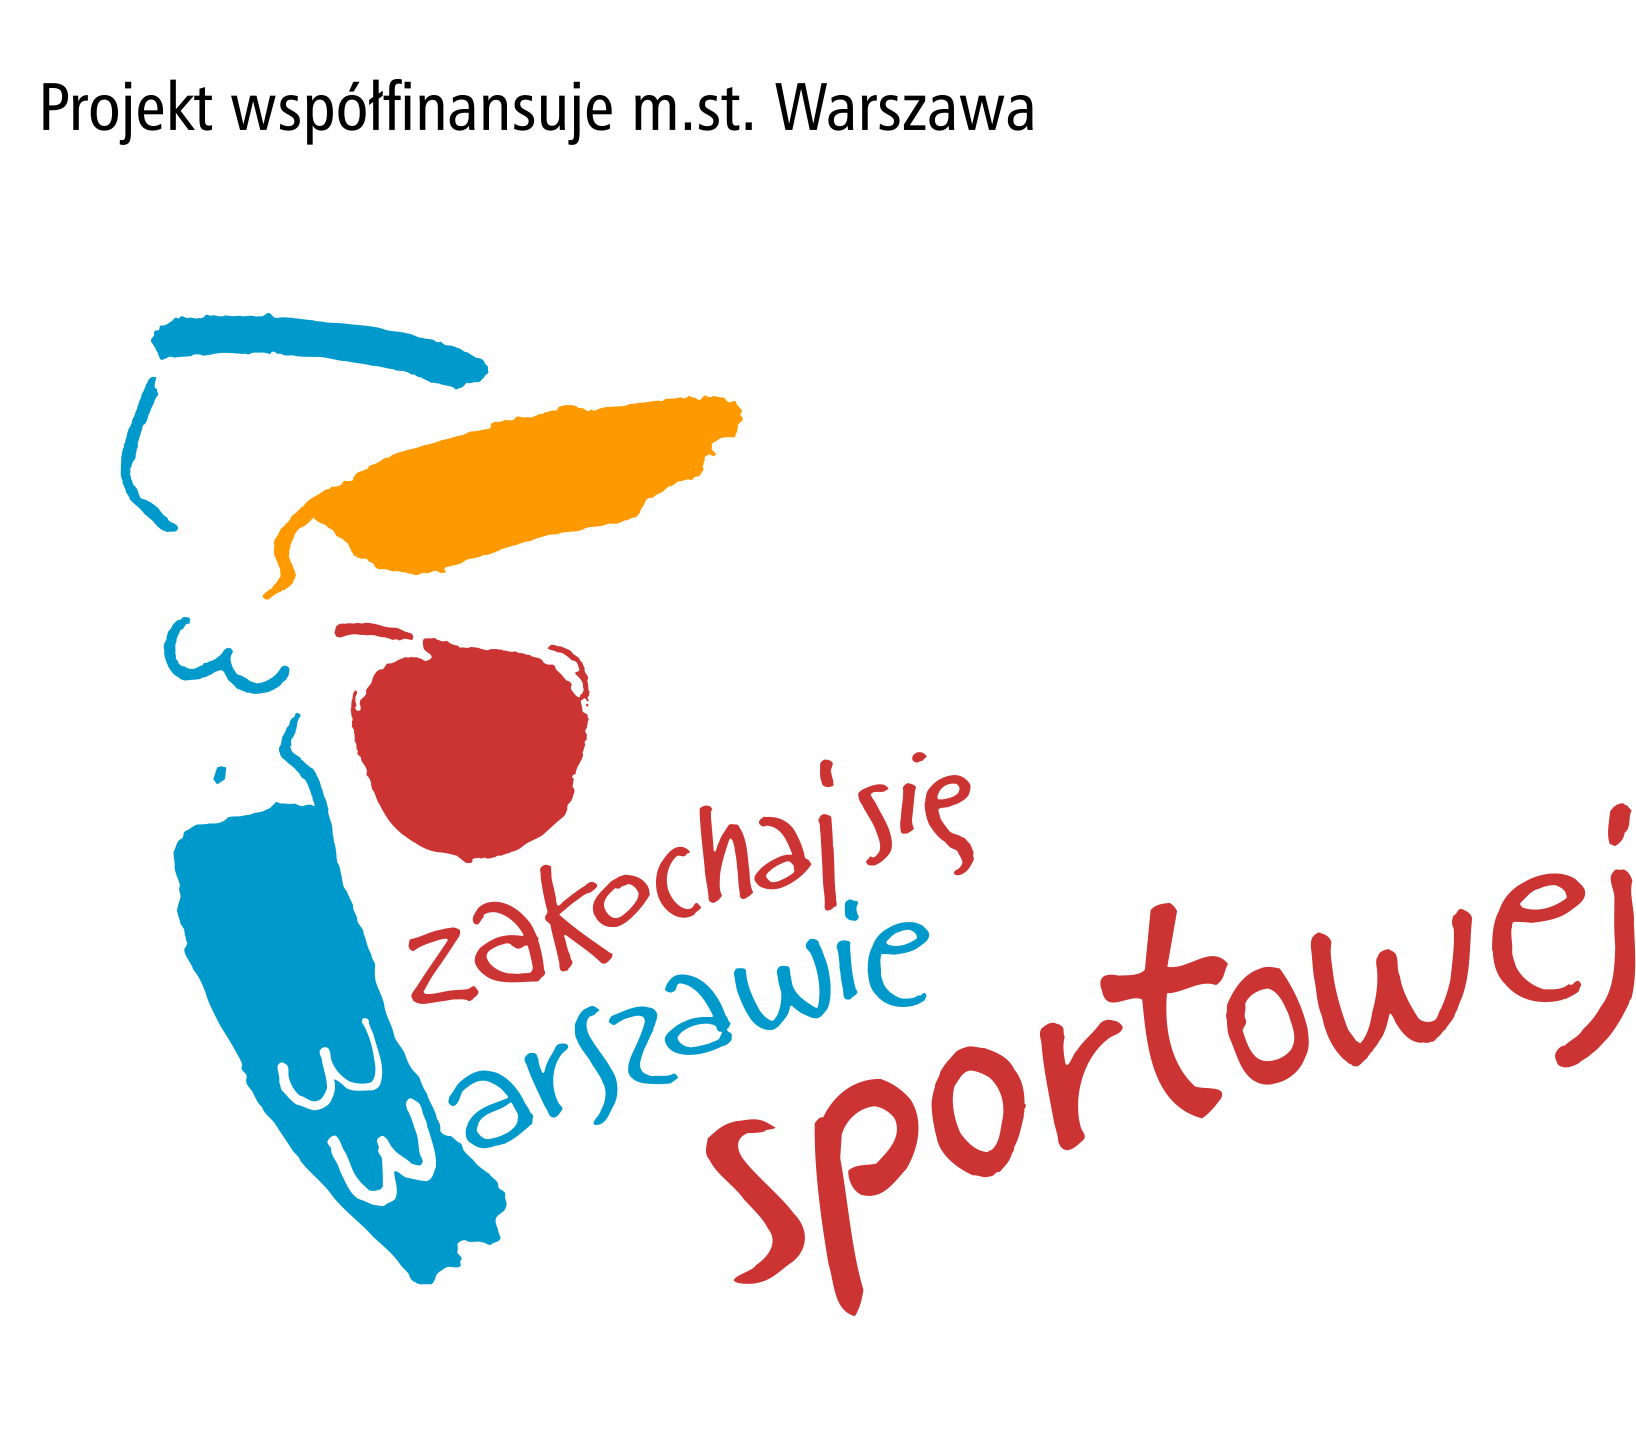 Projekt wspolfinansuje mst Warszawa sportowej biale